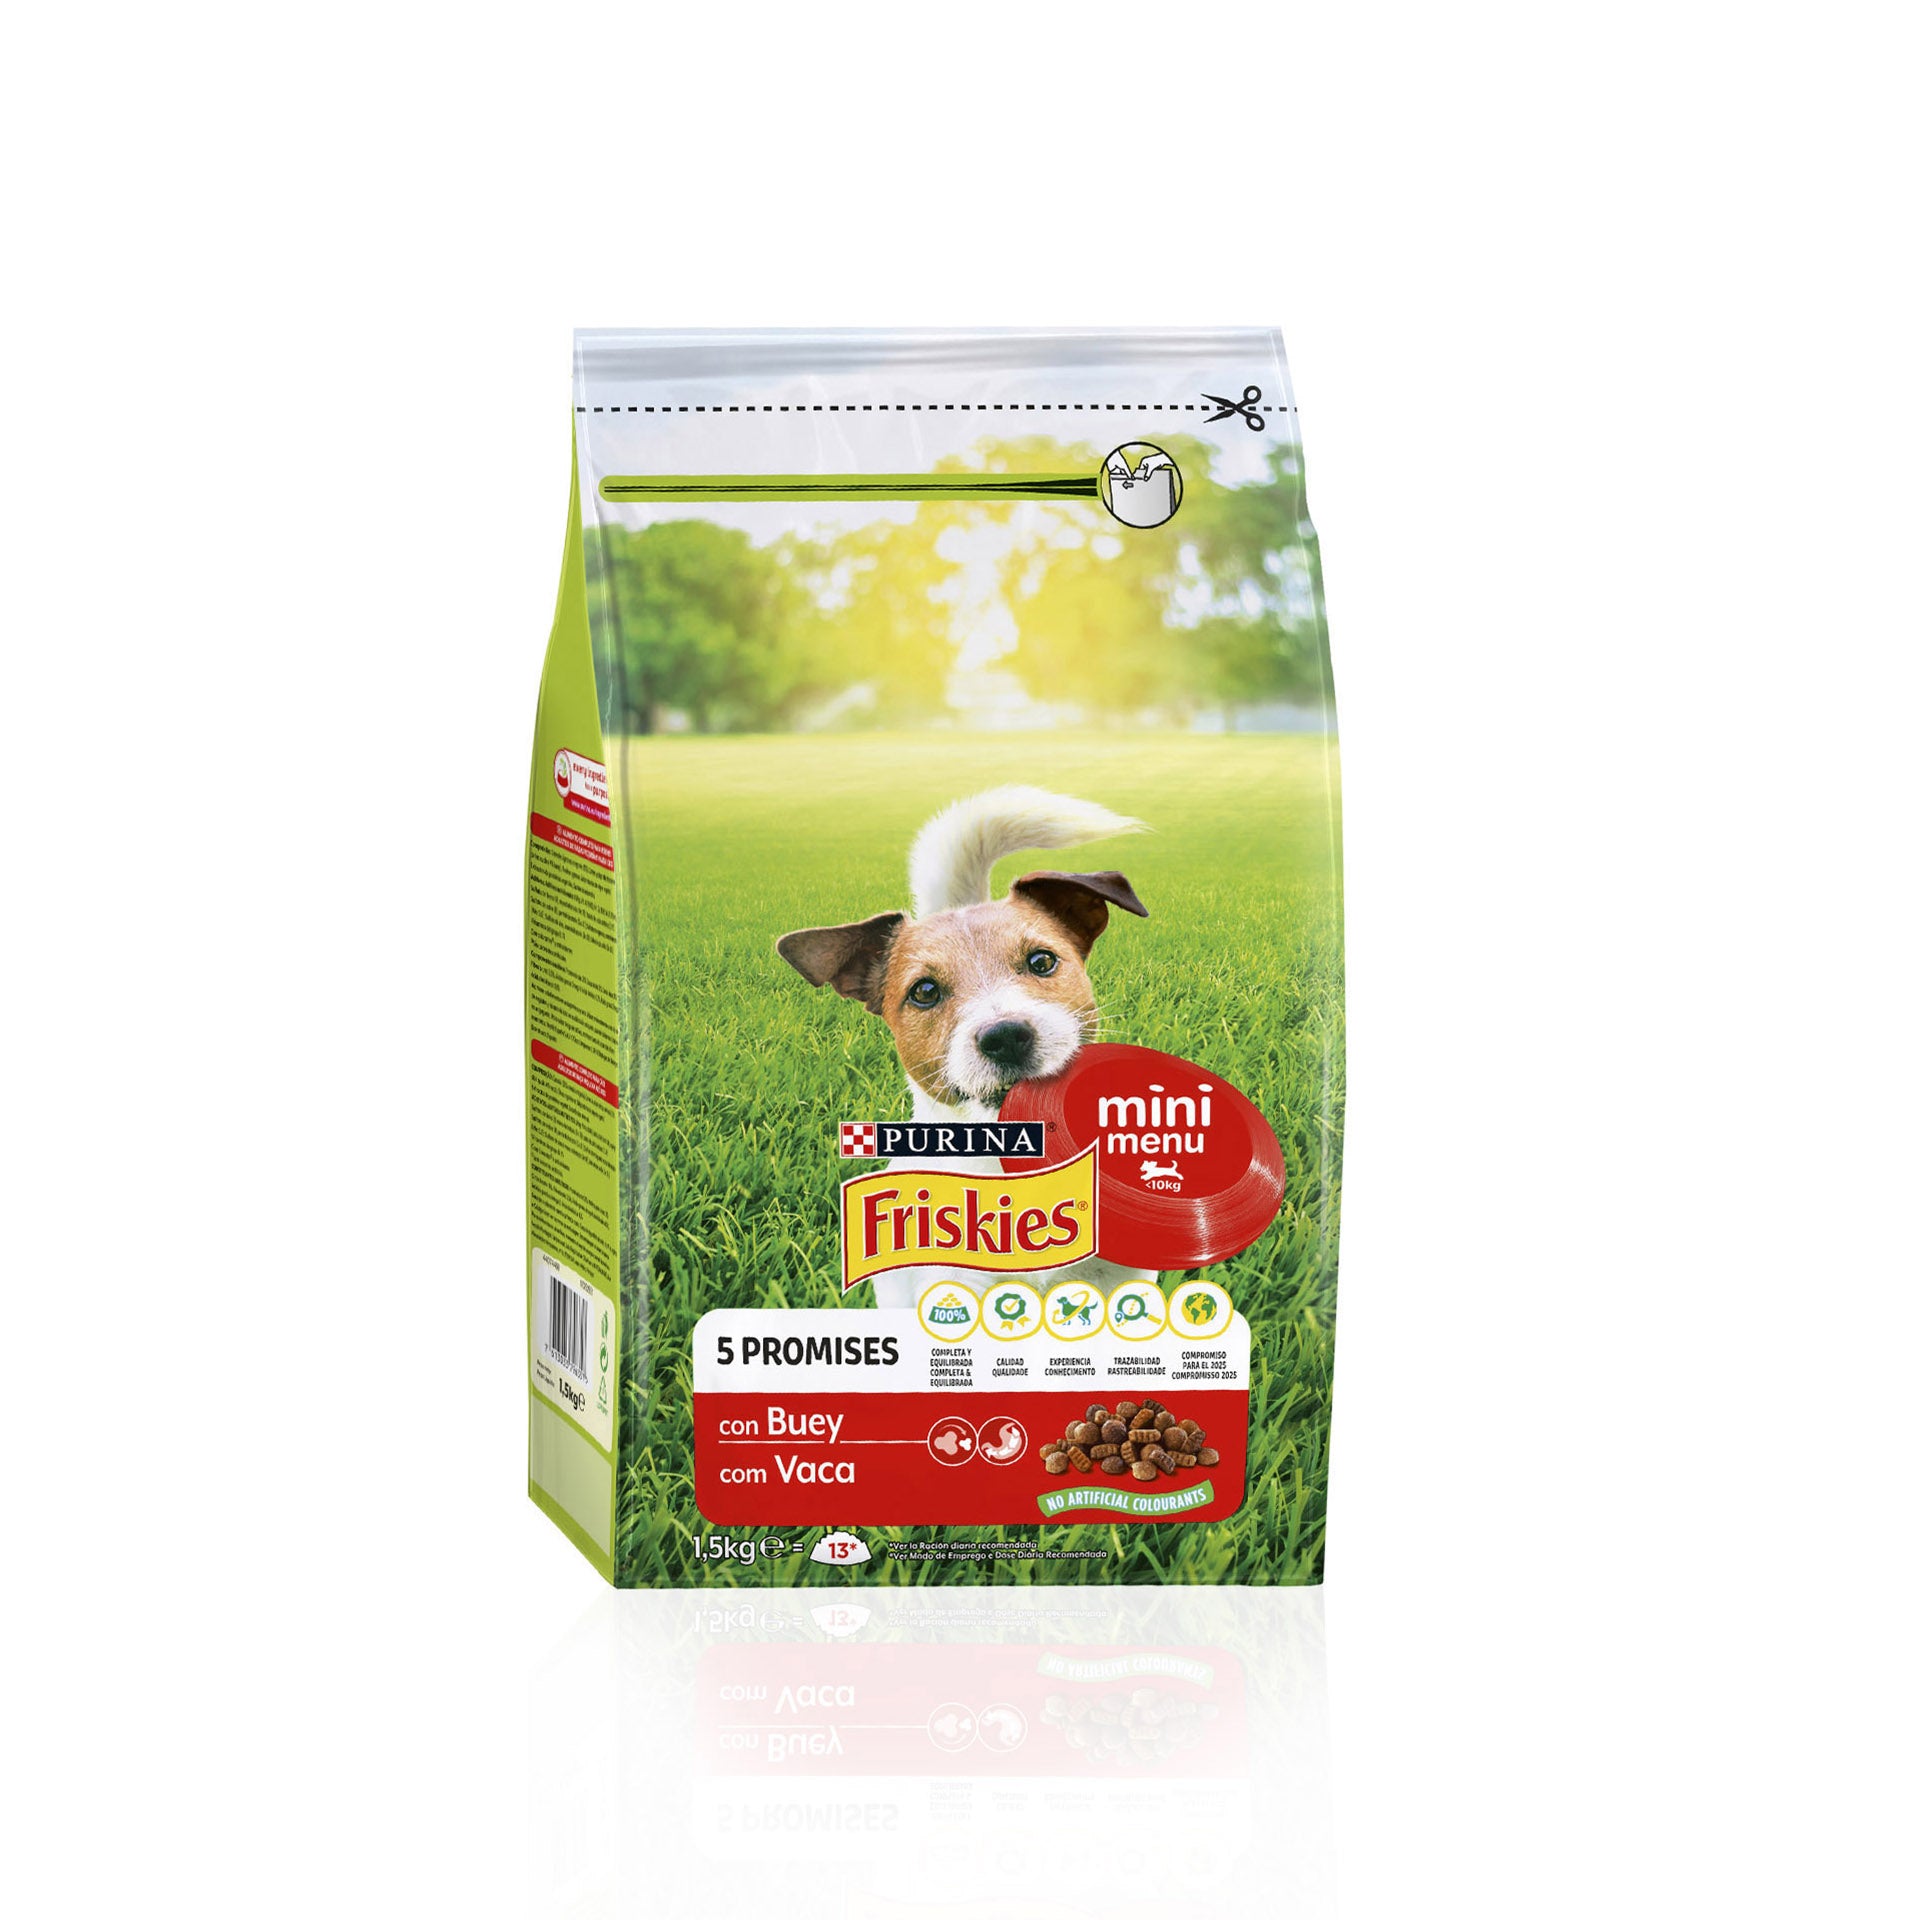 Purina Friskies Mini Menu Vitafit Ração para Cão Adulto Vaca 1,5 kg